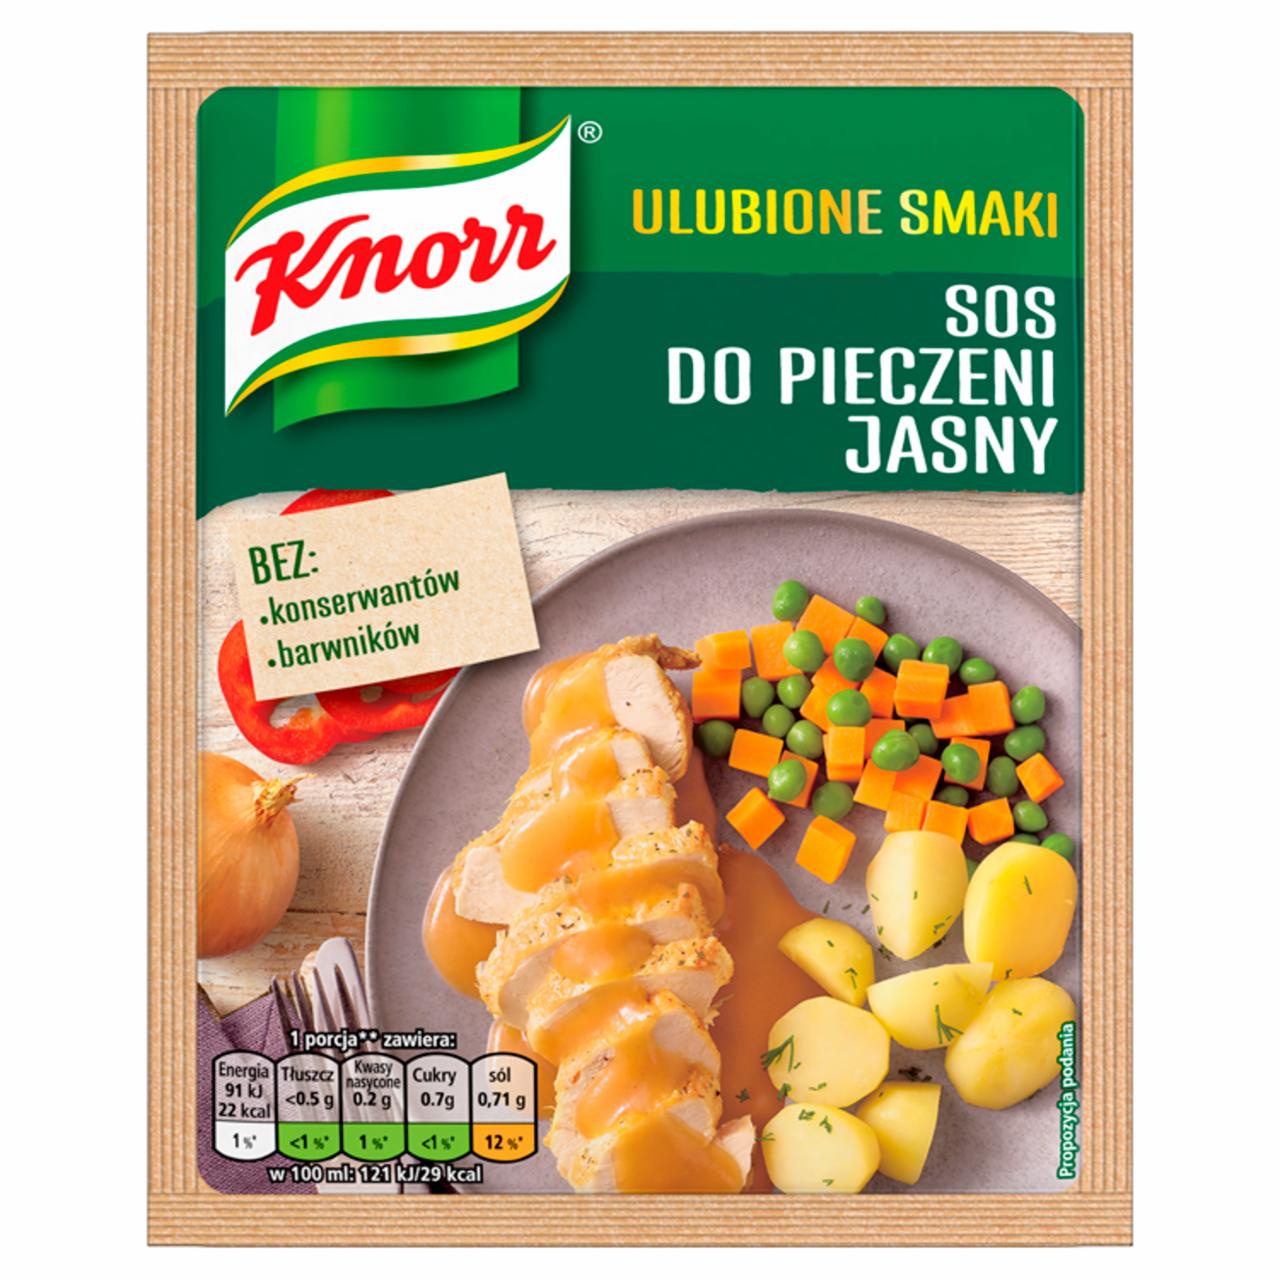 Zdjęcia - Knorr Domowe Smaki Sos do pieczeni jasny 25 g